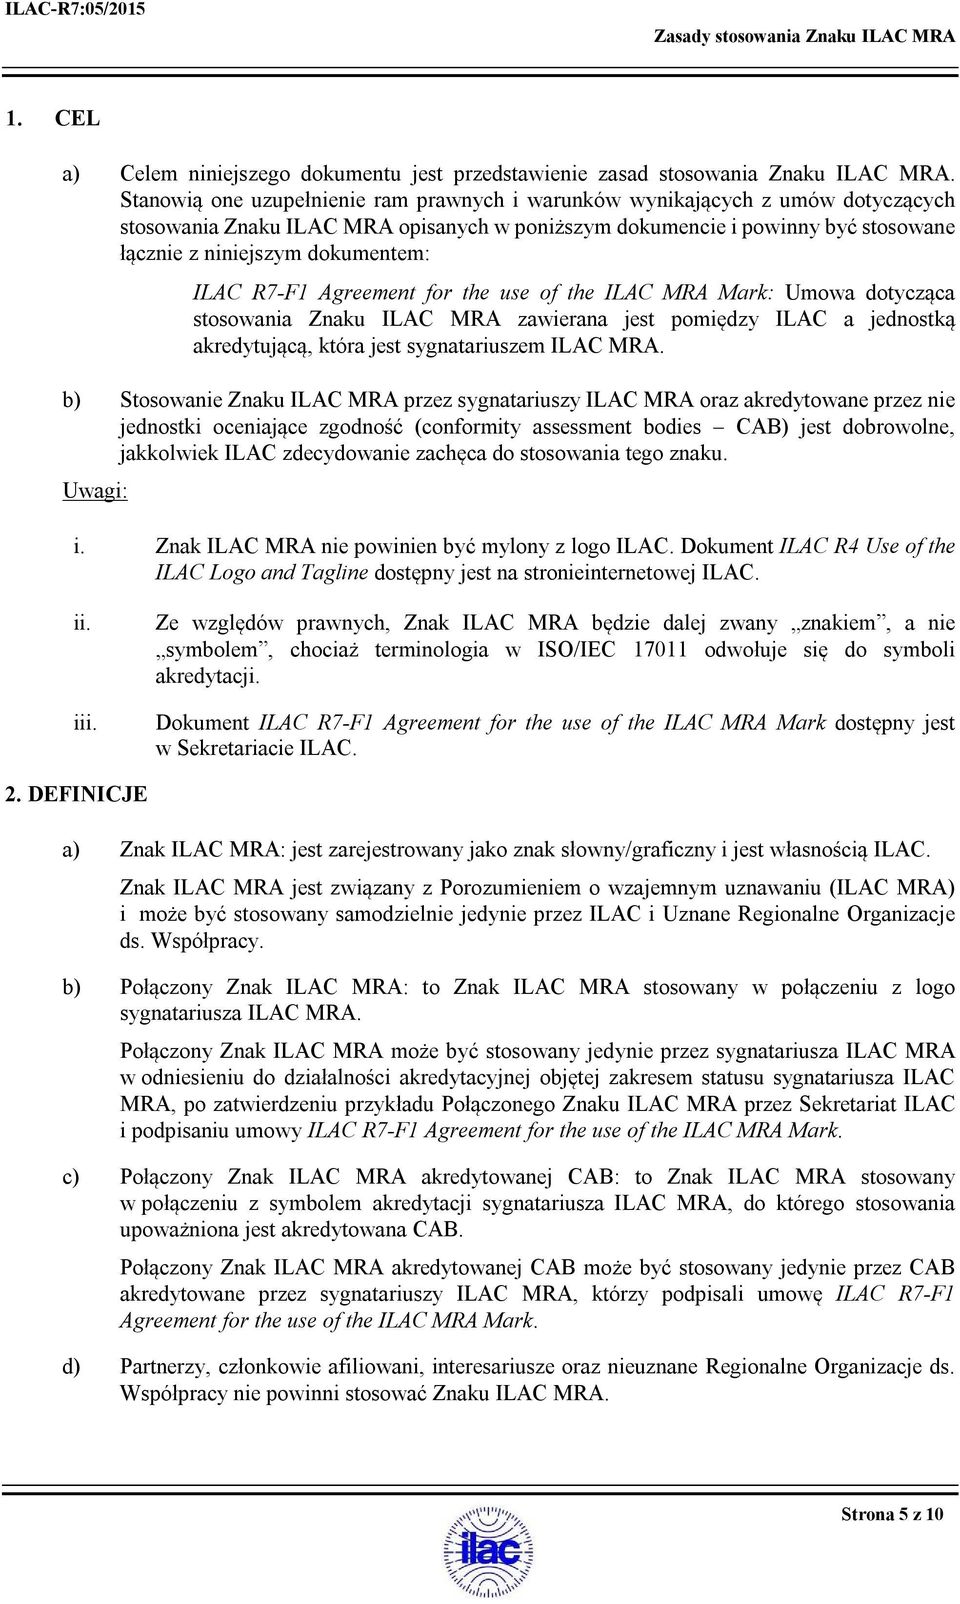 ILAC R7-F1 Agreement for the use of the ILAC MRA Mark: Umowa dotycząca stosowania Znaku ILAC MRA zawierana jest pomiędzy ILAC a jednostką akredytującą, która jest sygnatariuszem ILAC MRA.